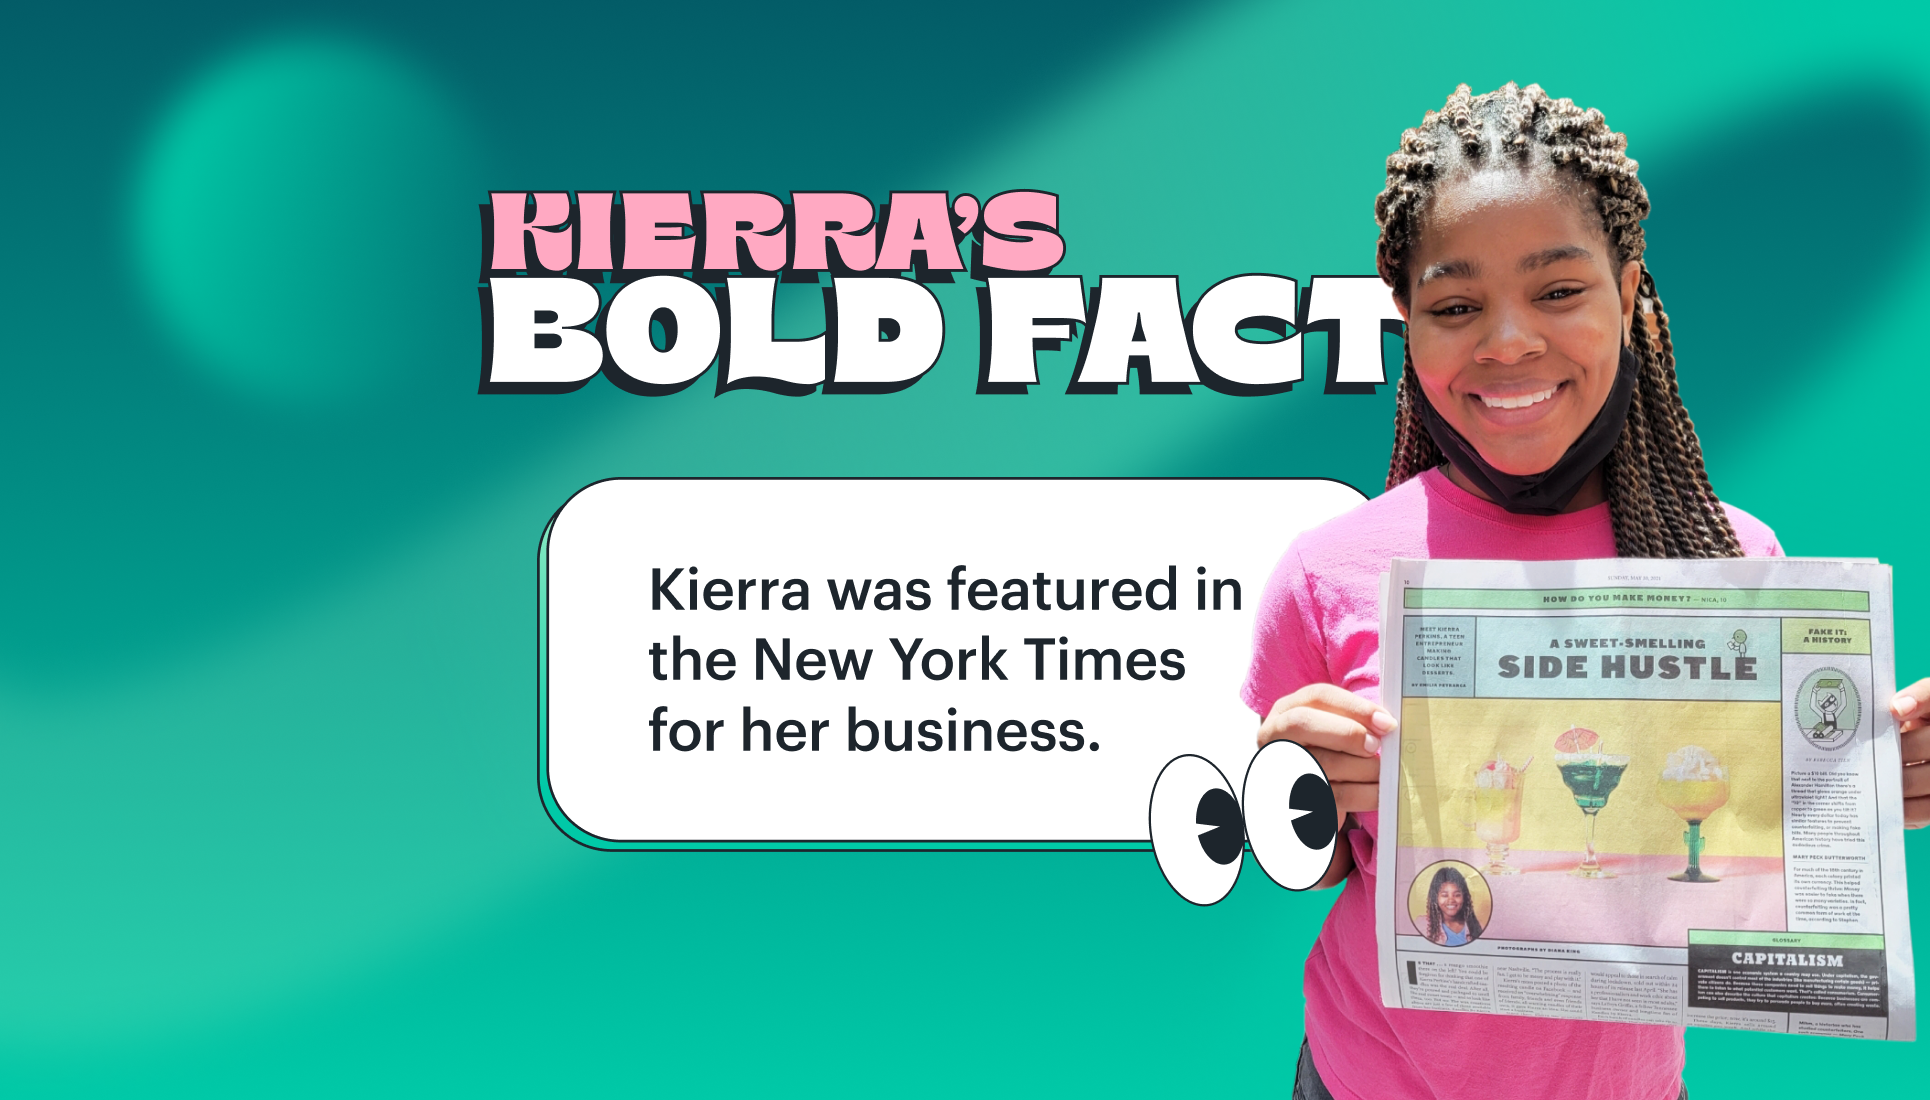 Kierra's Bold Fact